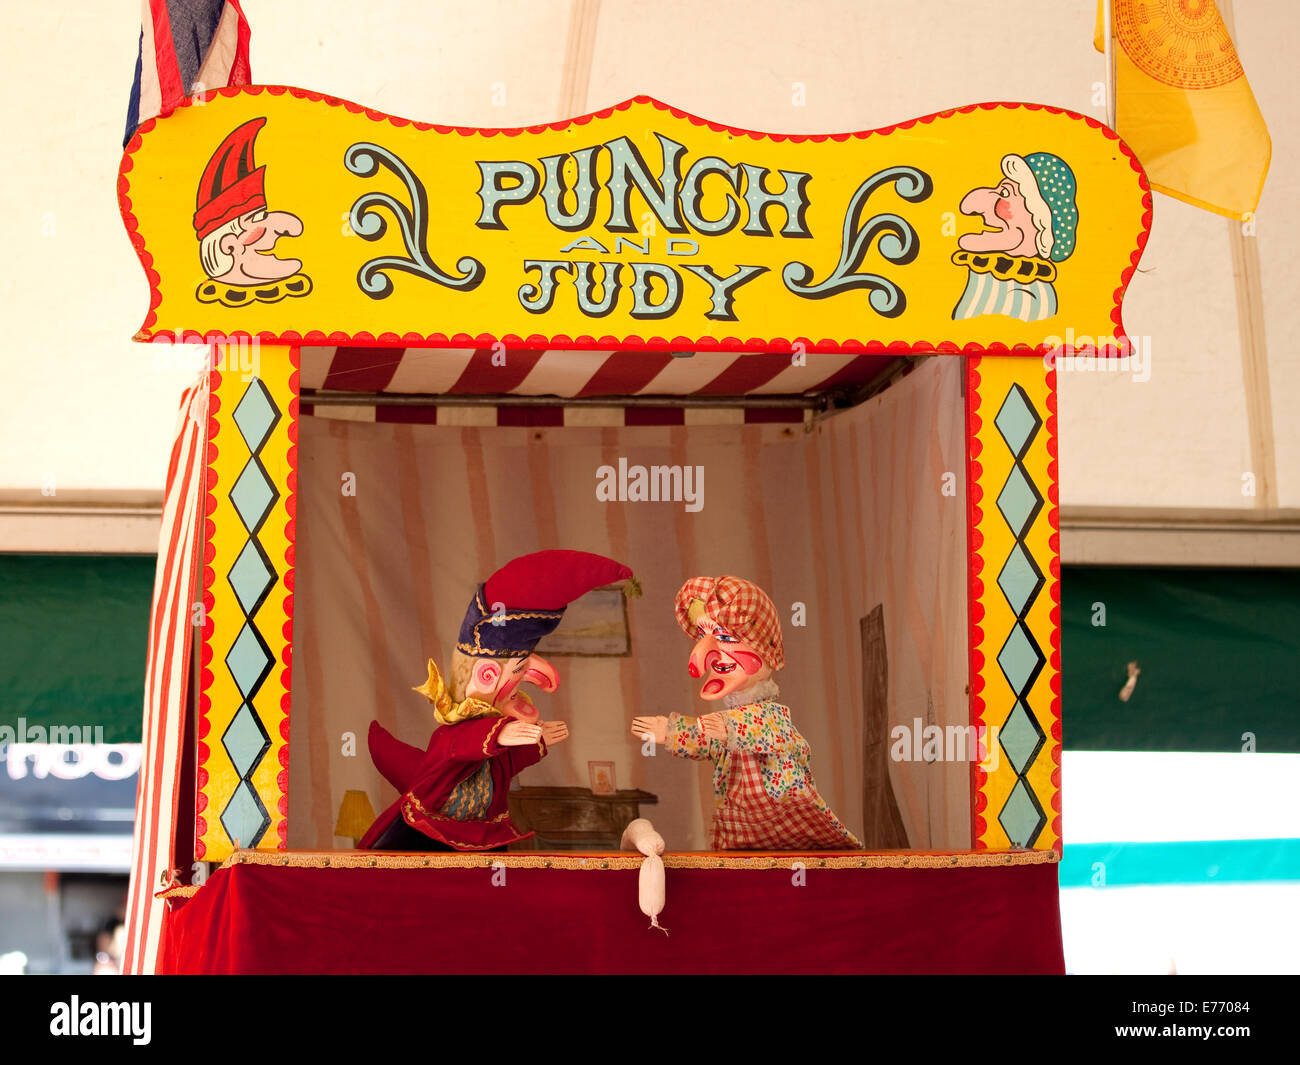 Punch judy puppet -Fotos und -Bildmaterial in hoher Auflösung – Alamy